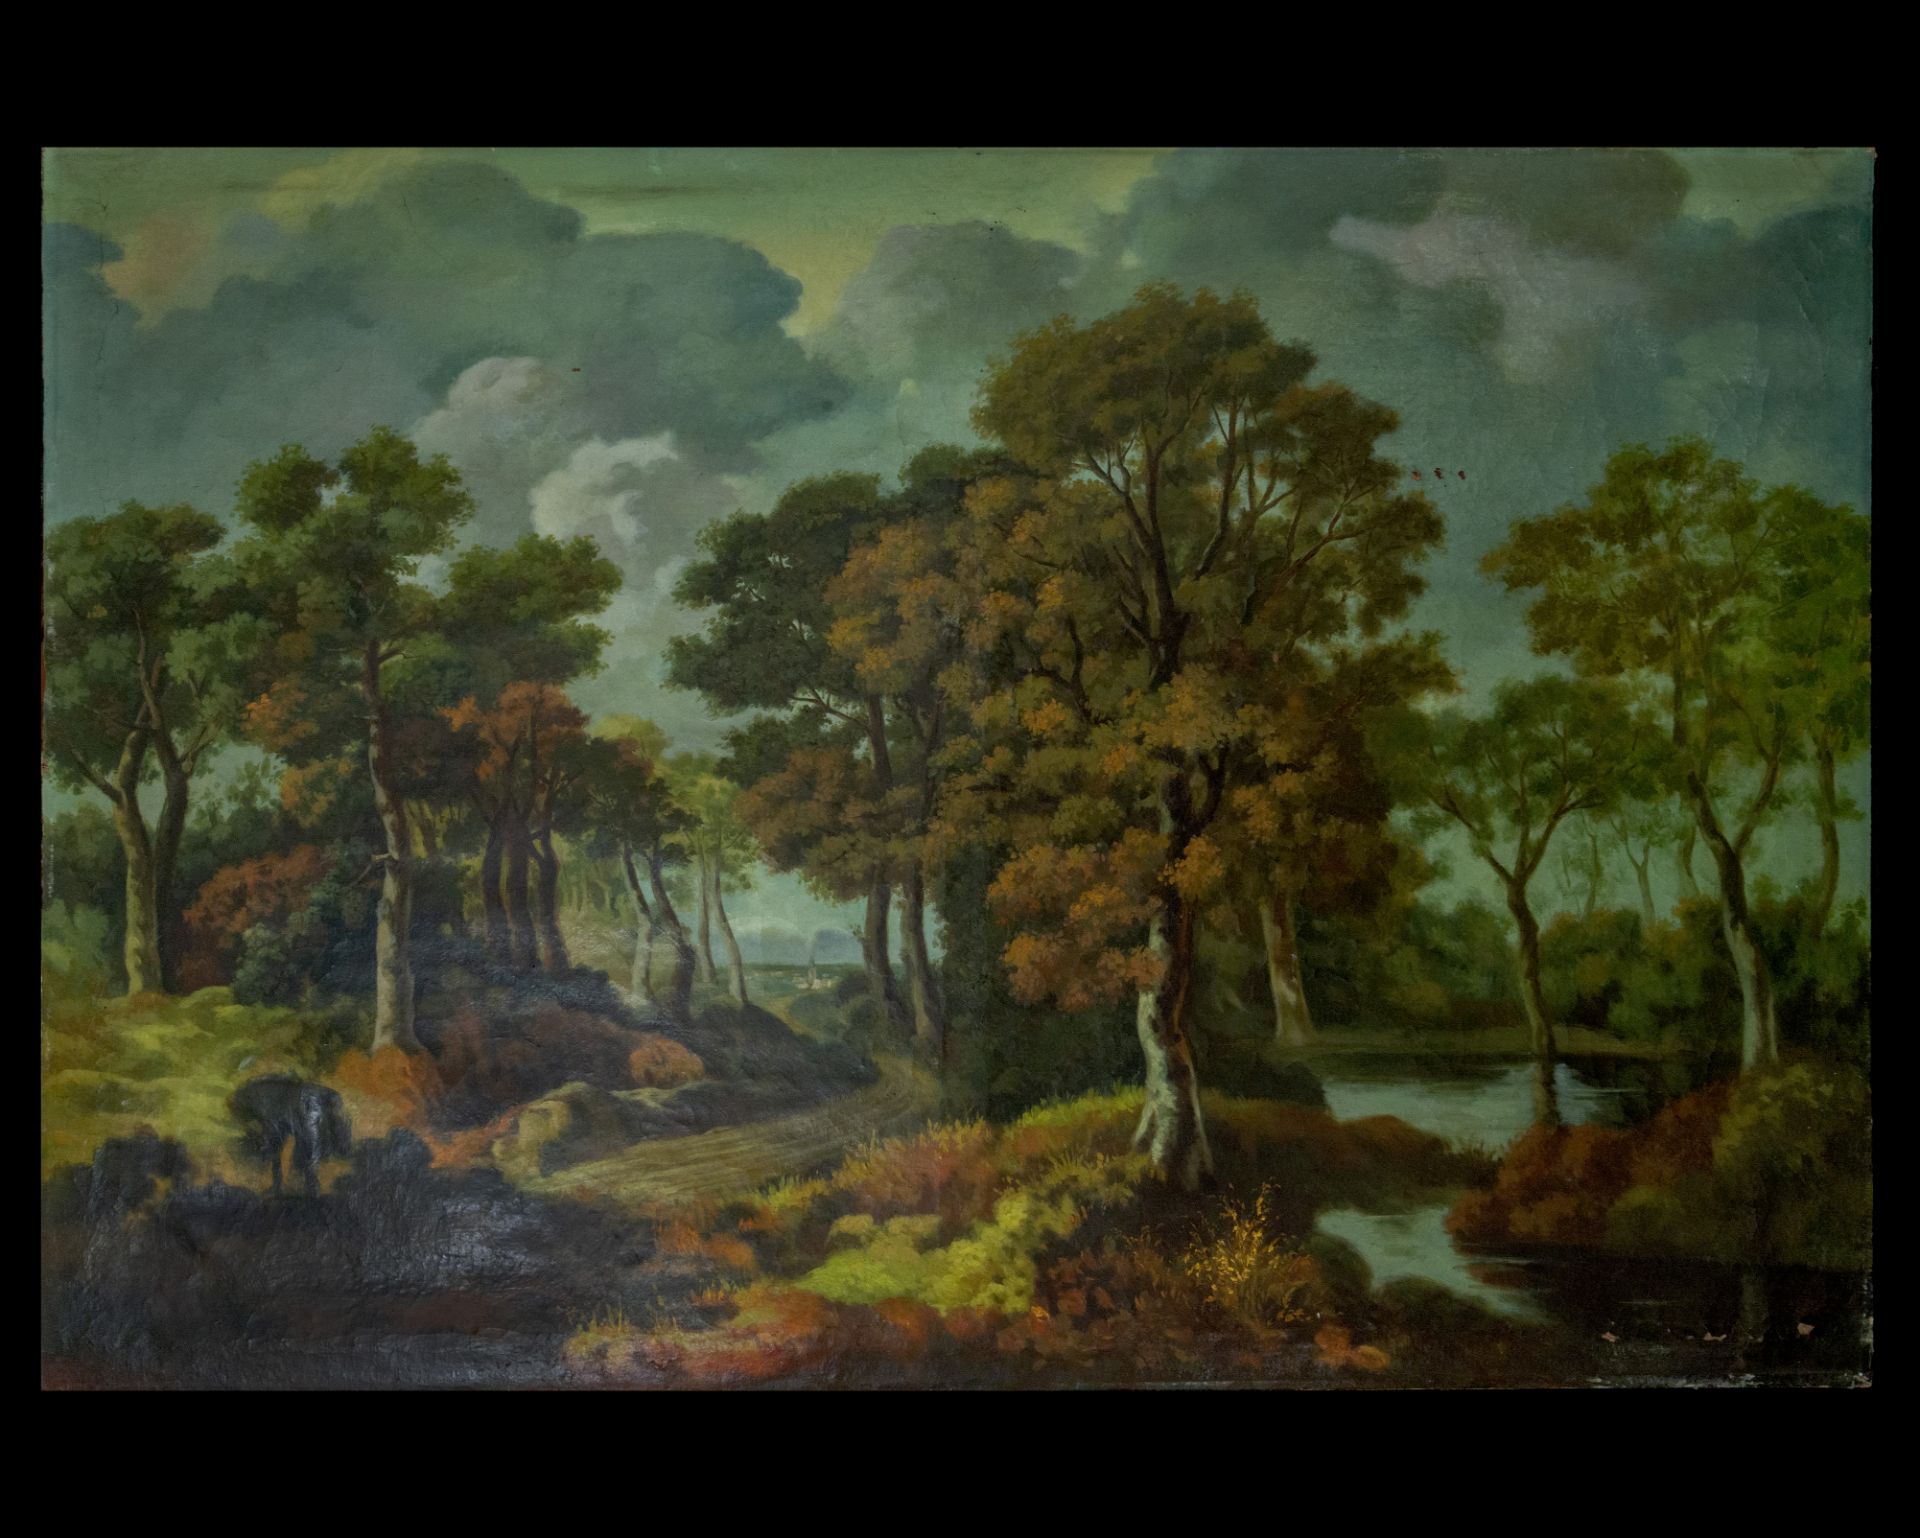 River landscape, 18th century, Flemish school